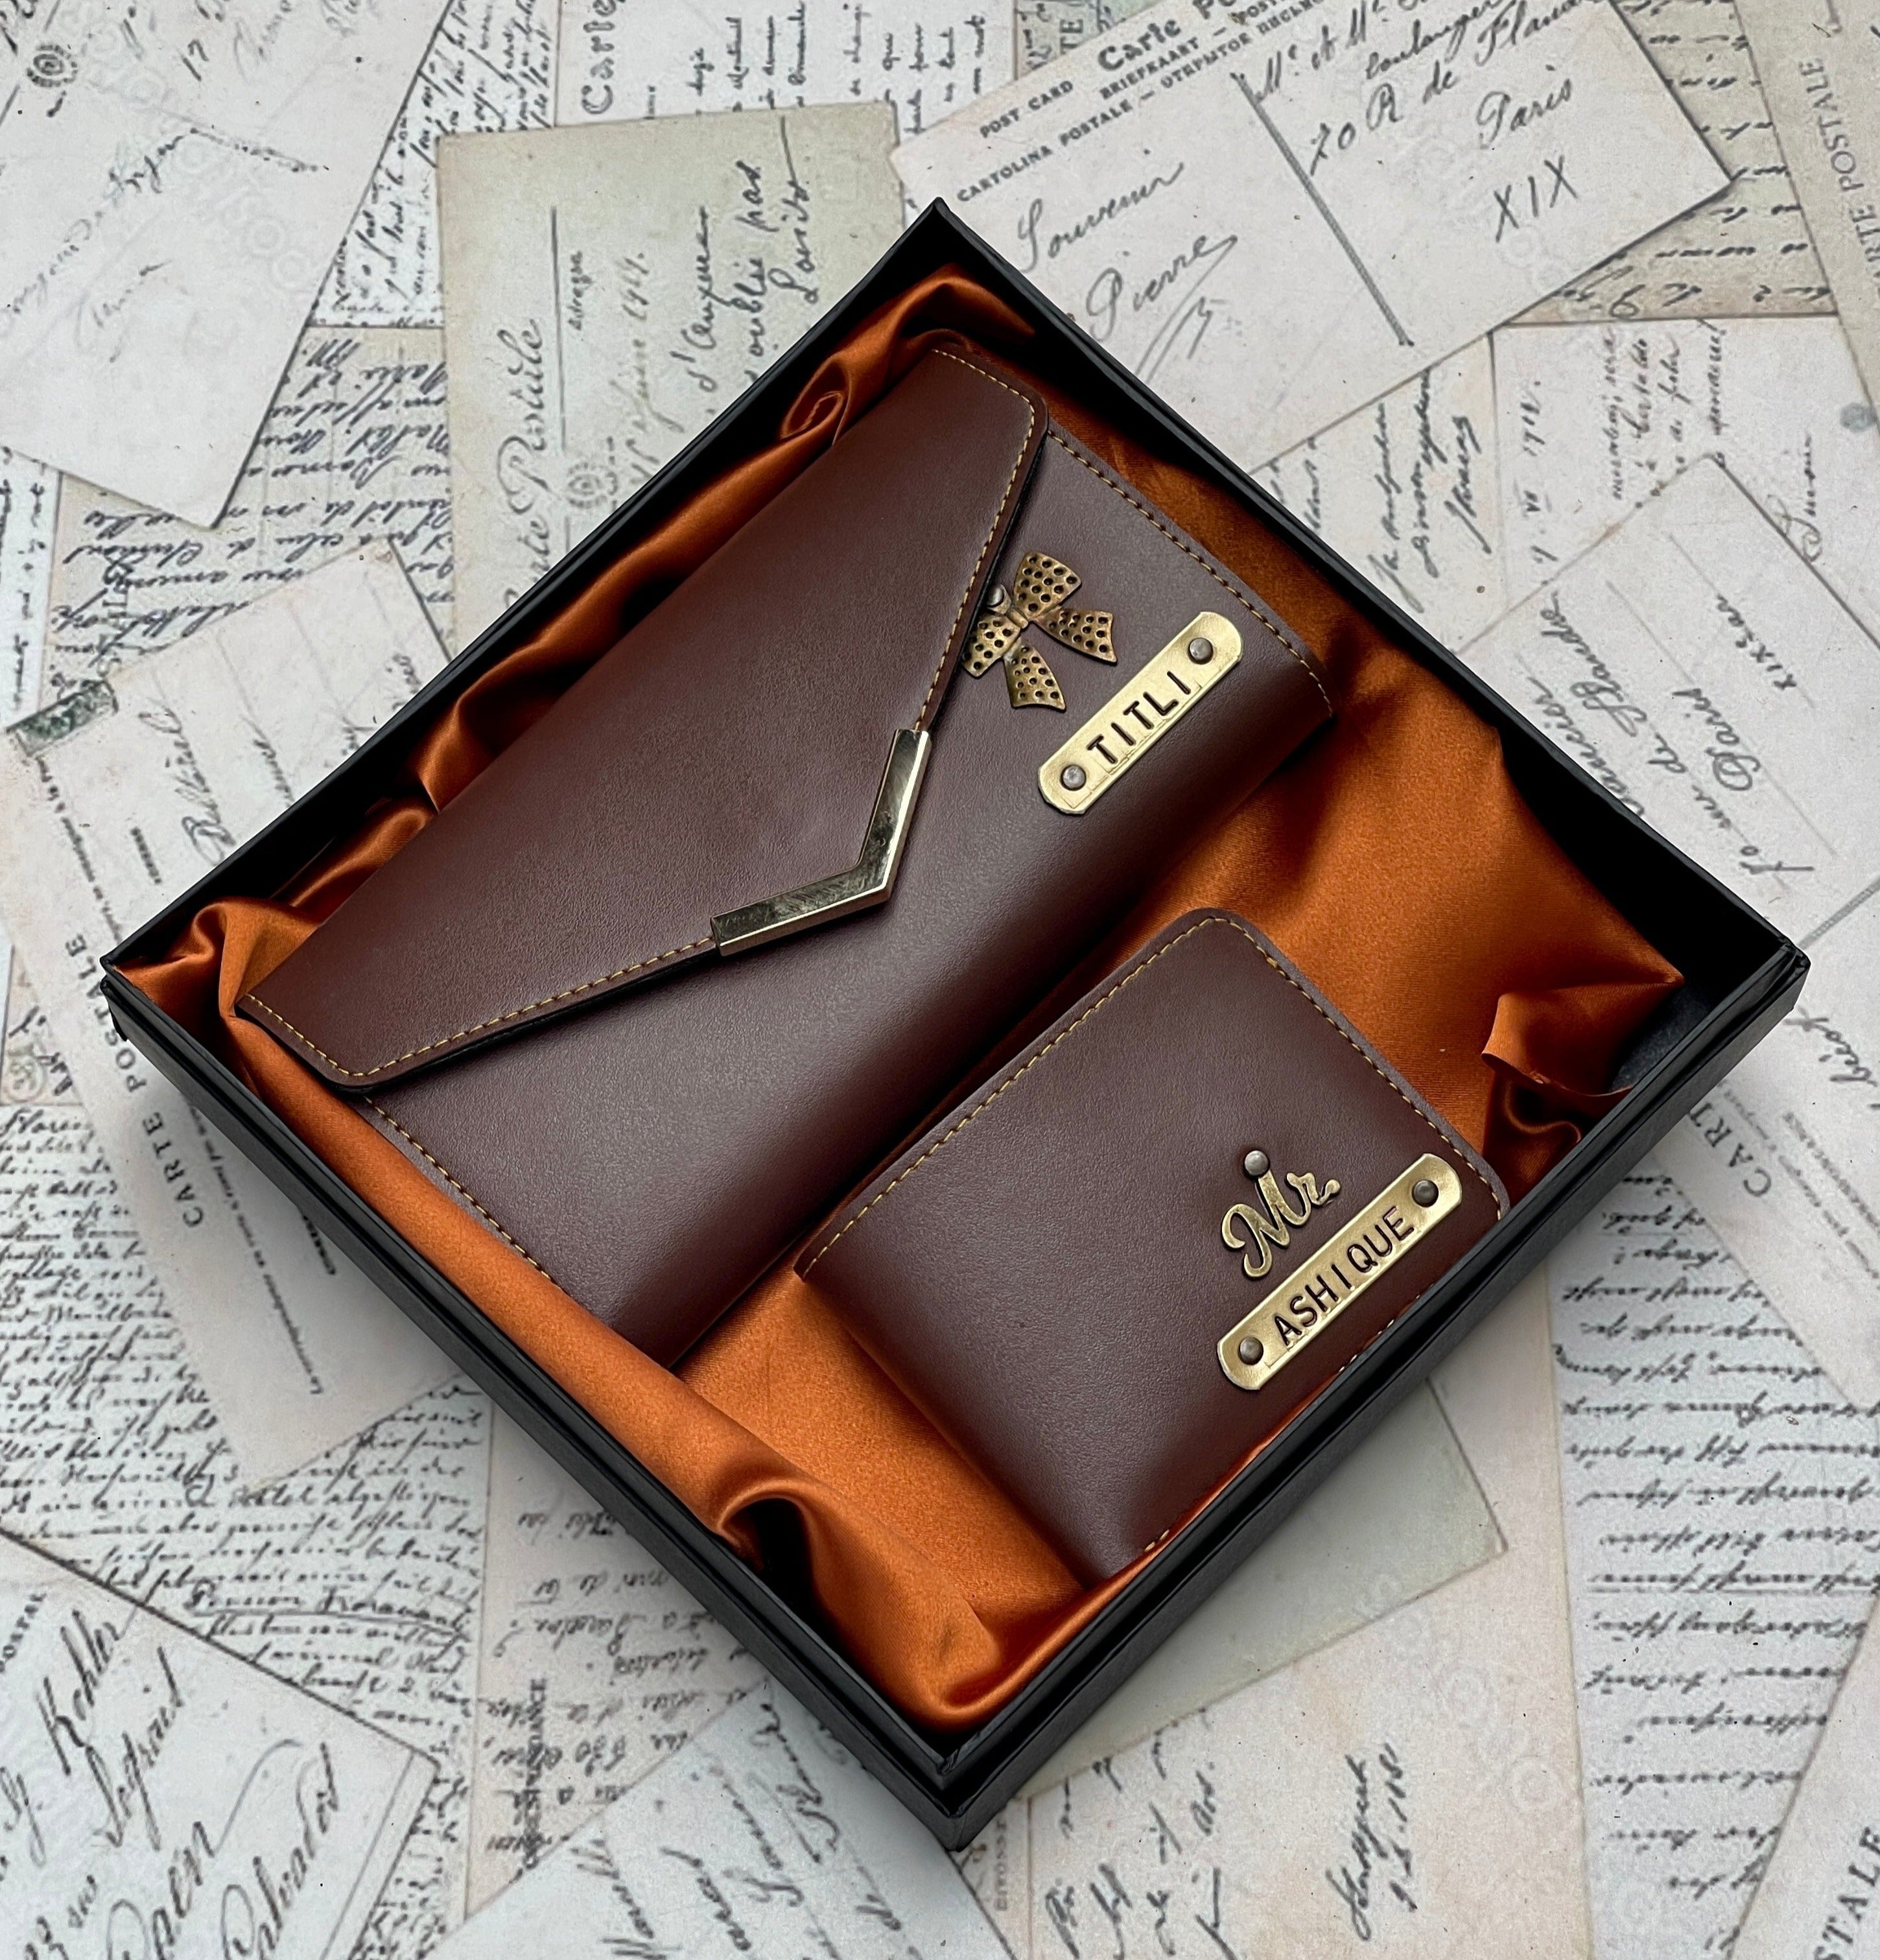 Baggallini small black nylon crossbody purse And Wallet Combo 7”W X 5”H EUC  43 | eBay